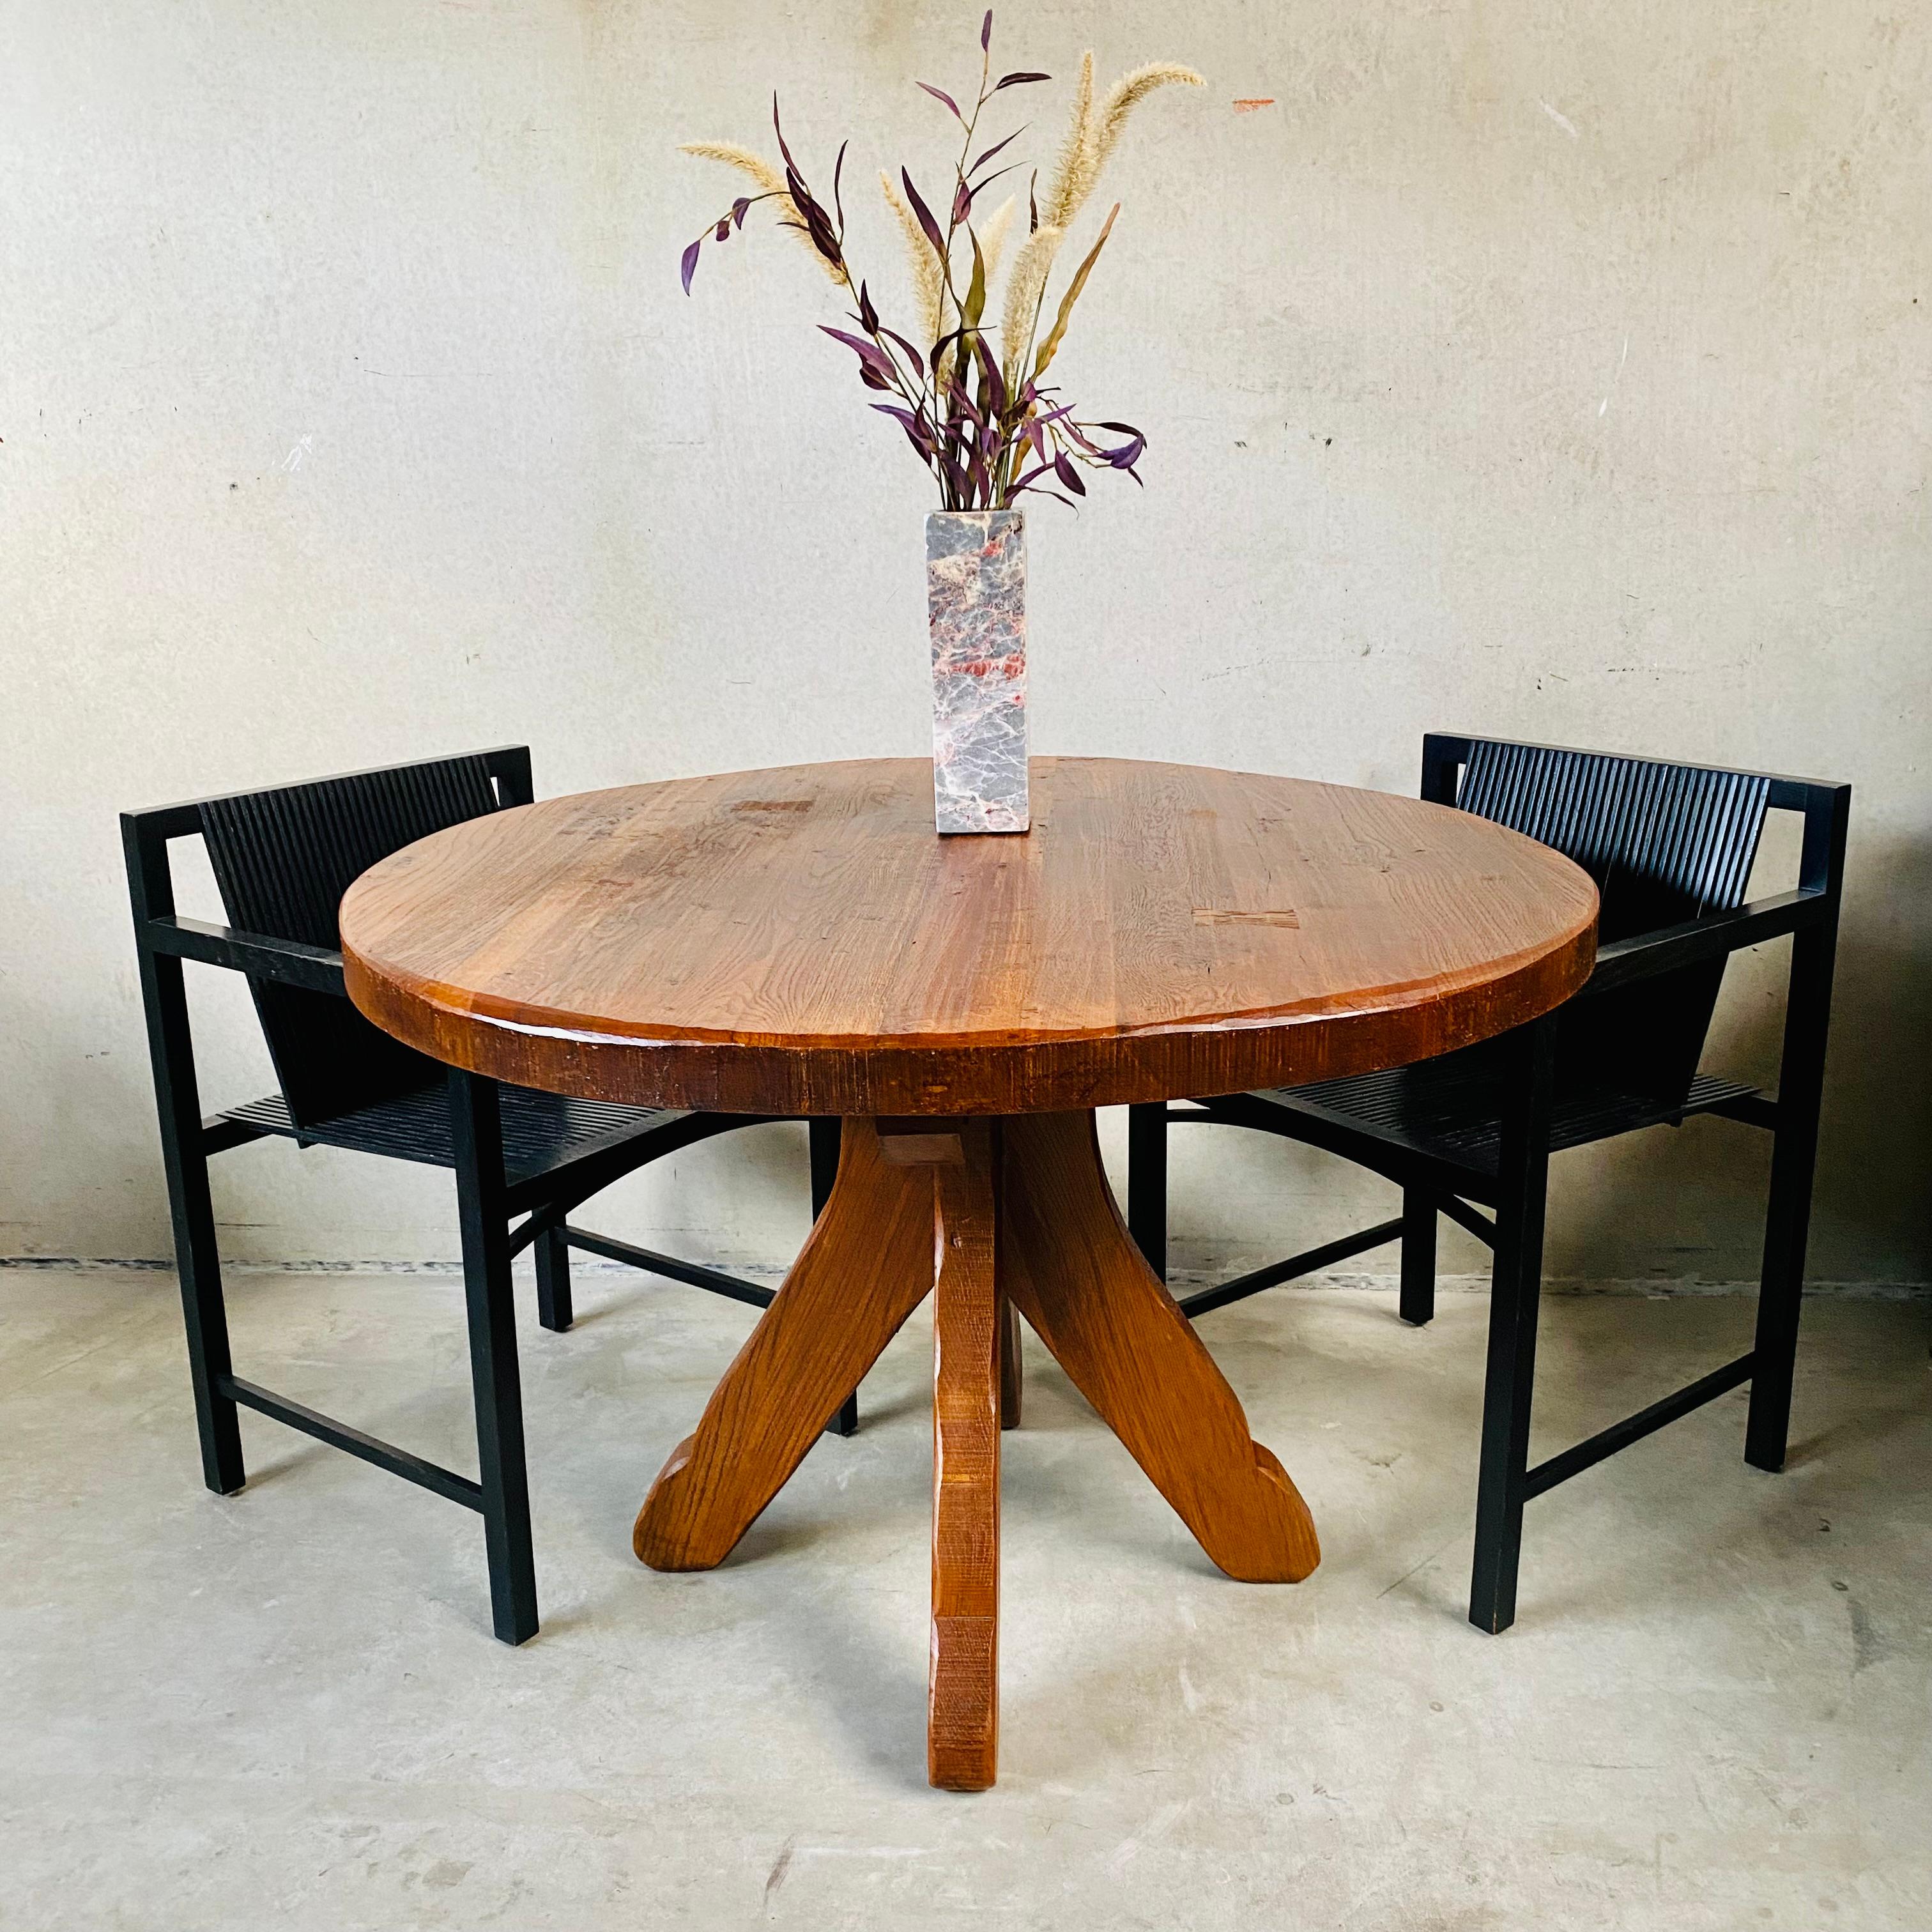 Voici la table de salle à manger en chêne naturel De Puydt, datant du milieu du siècle dernier : Un mélange intemporel d'Elegance et de charme brutaliste

Immergez-vous dans l'allure de la table de salle à manger en chêne naturel De Puydt du milieu